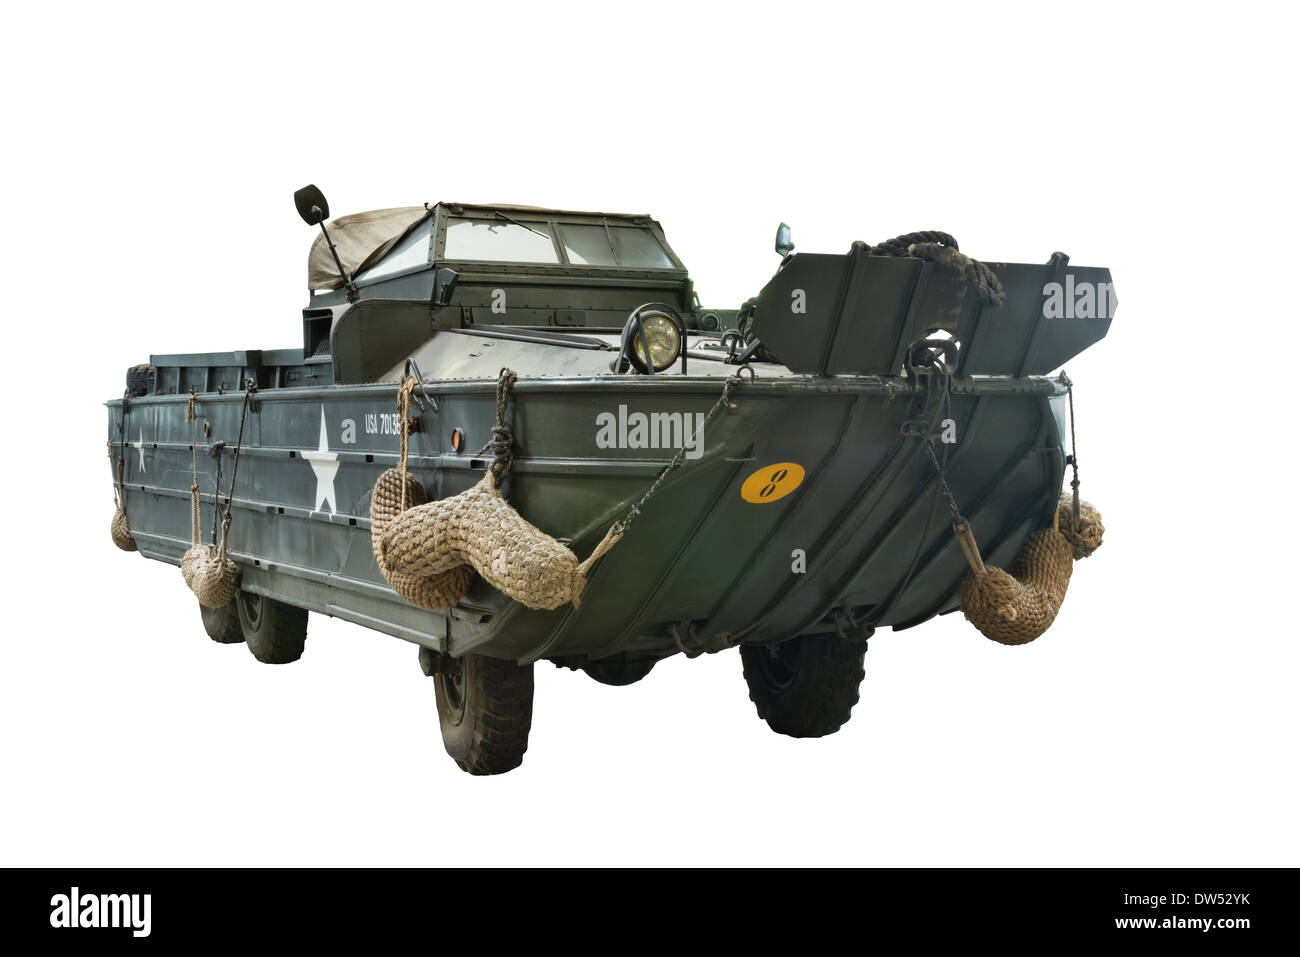 Un taglio al di fuori di un American GMC DUKW 353 o anatra veicolo anfibio militare utilizzato dagli alleati durante il WW2 & D giorno Foto Stock